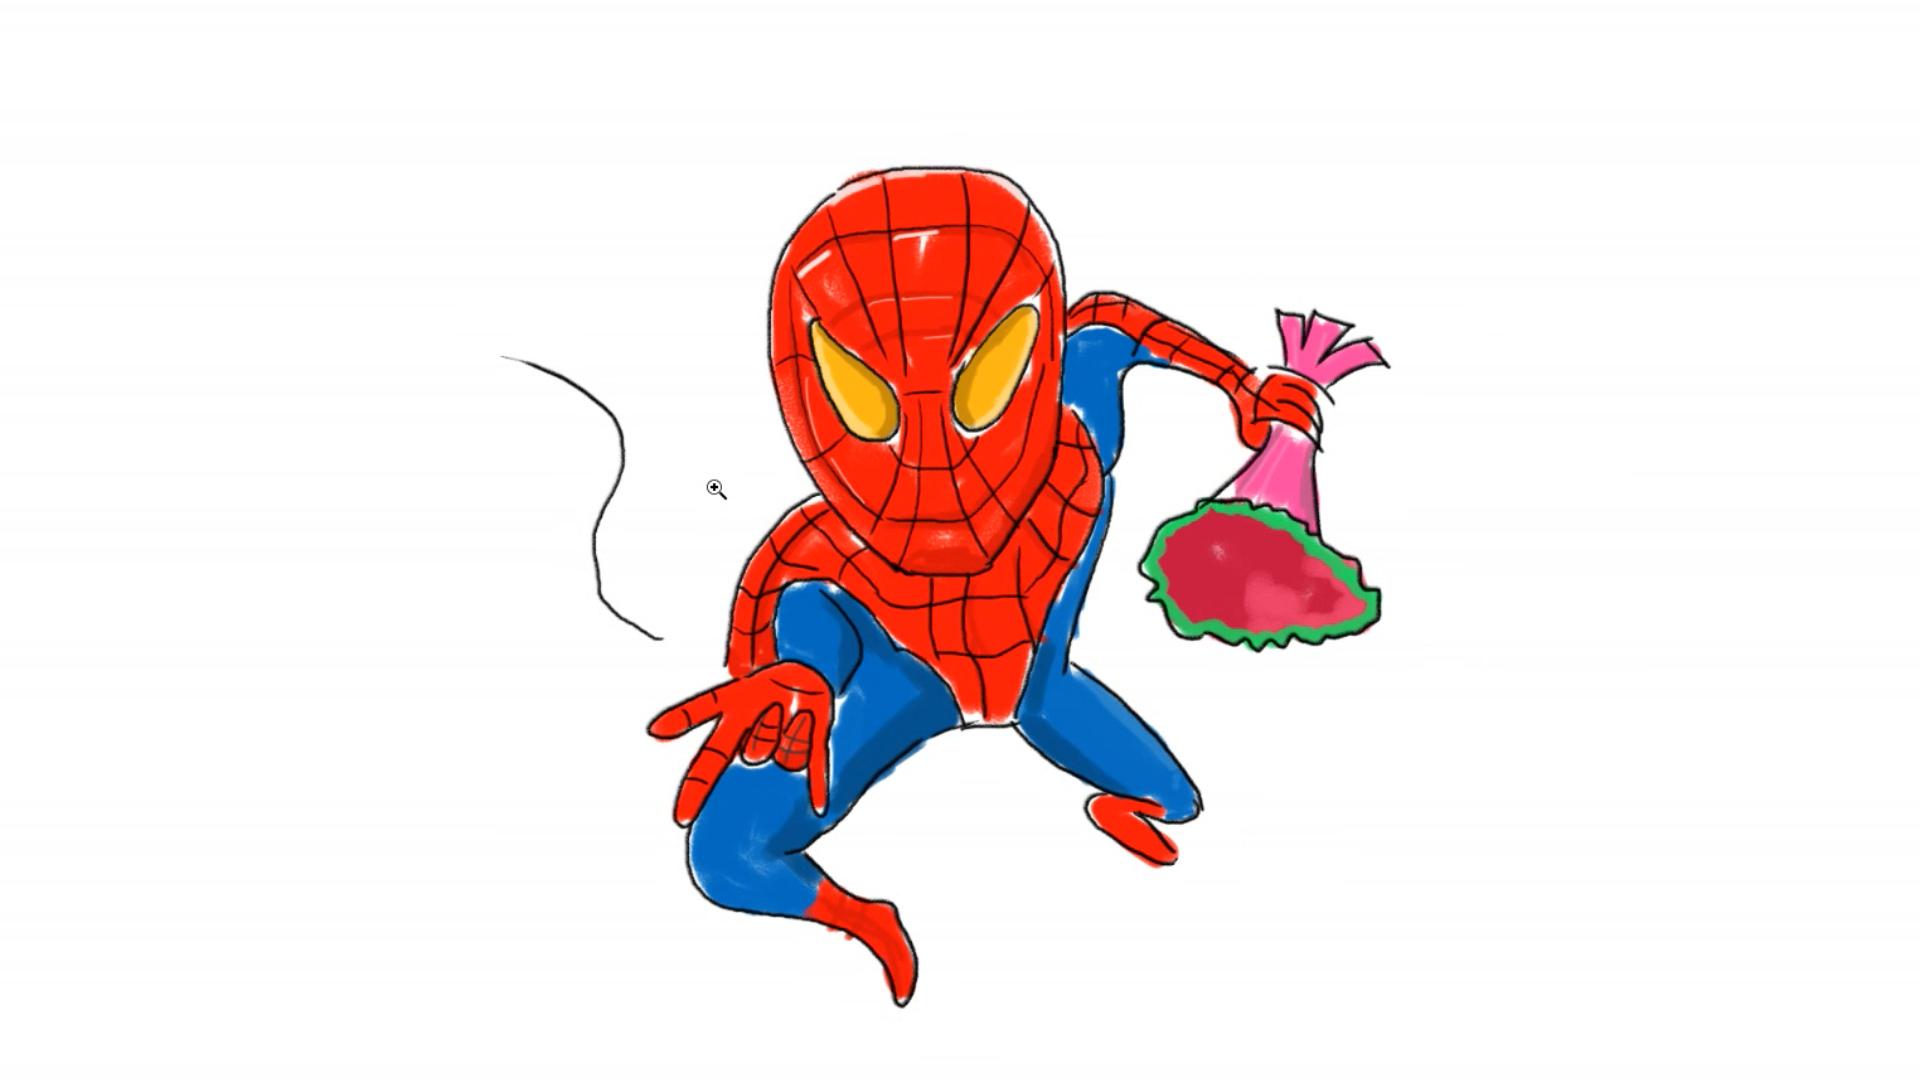 教大家如何画出漫威里的超级英雄 蜘蛛侠卡通漫画